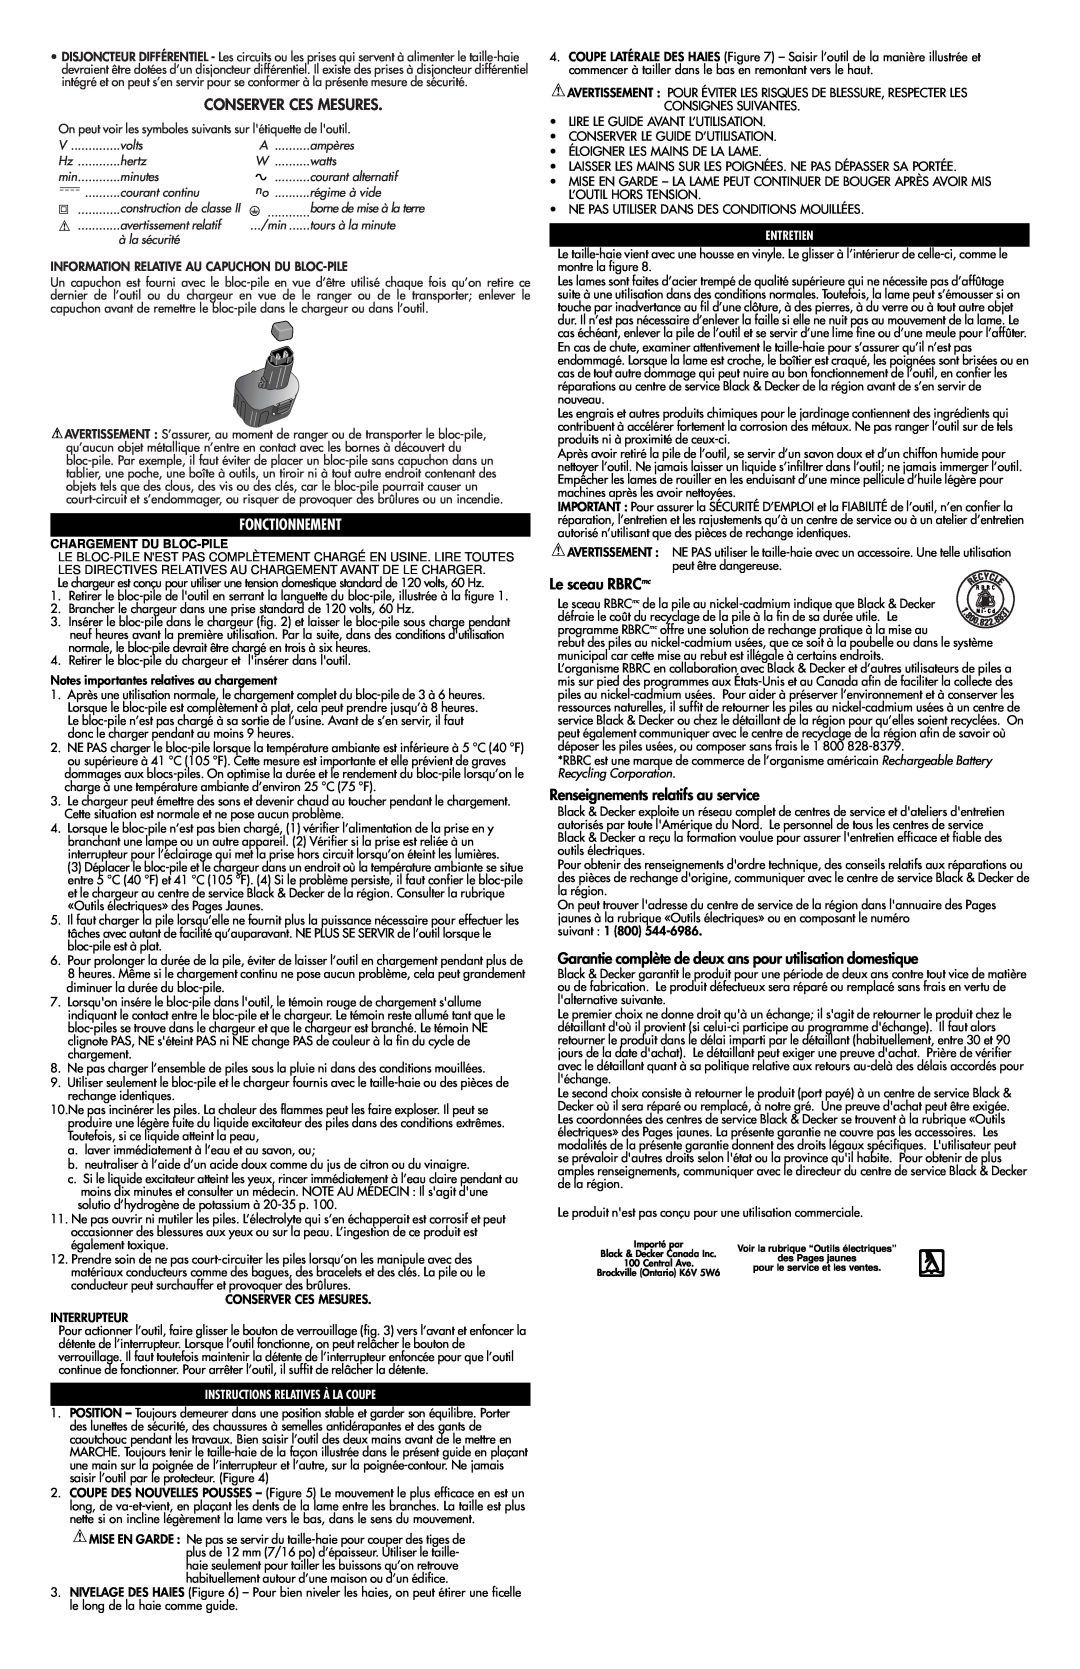 Black & Decker 616081-00 Conserver Ces Mesures, Fonctionnement, Le sceau RBRCmc, Renseignements relatifs au service 